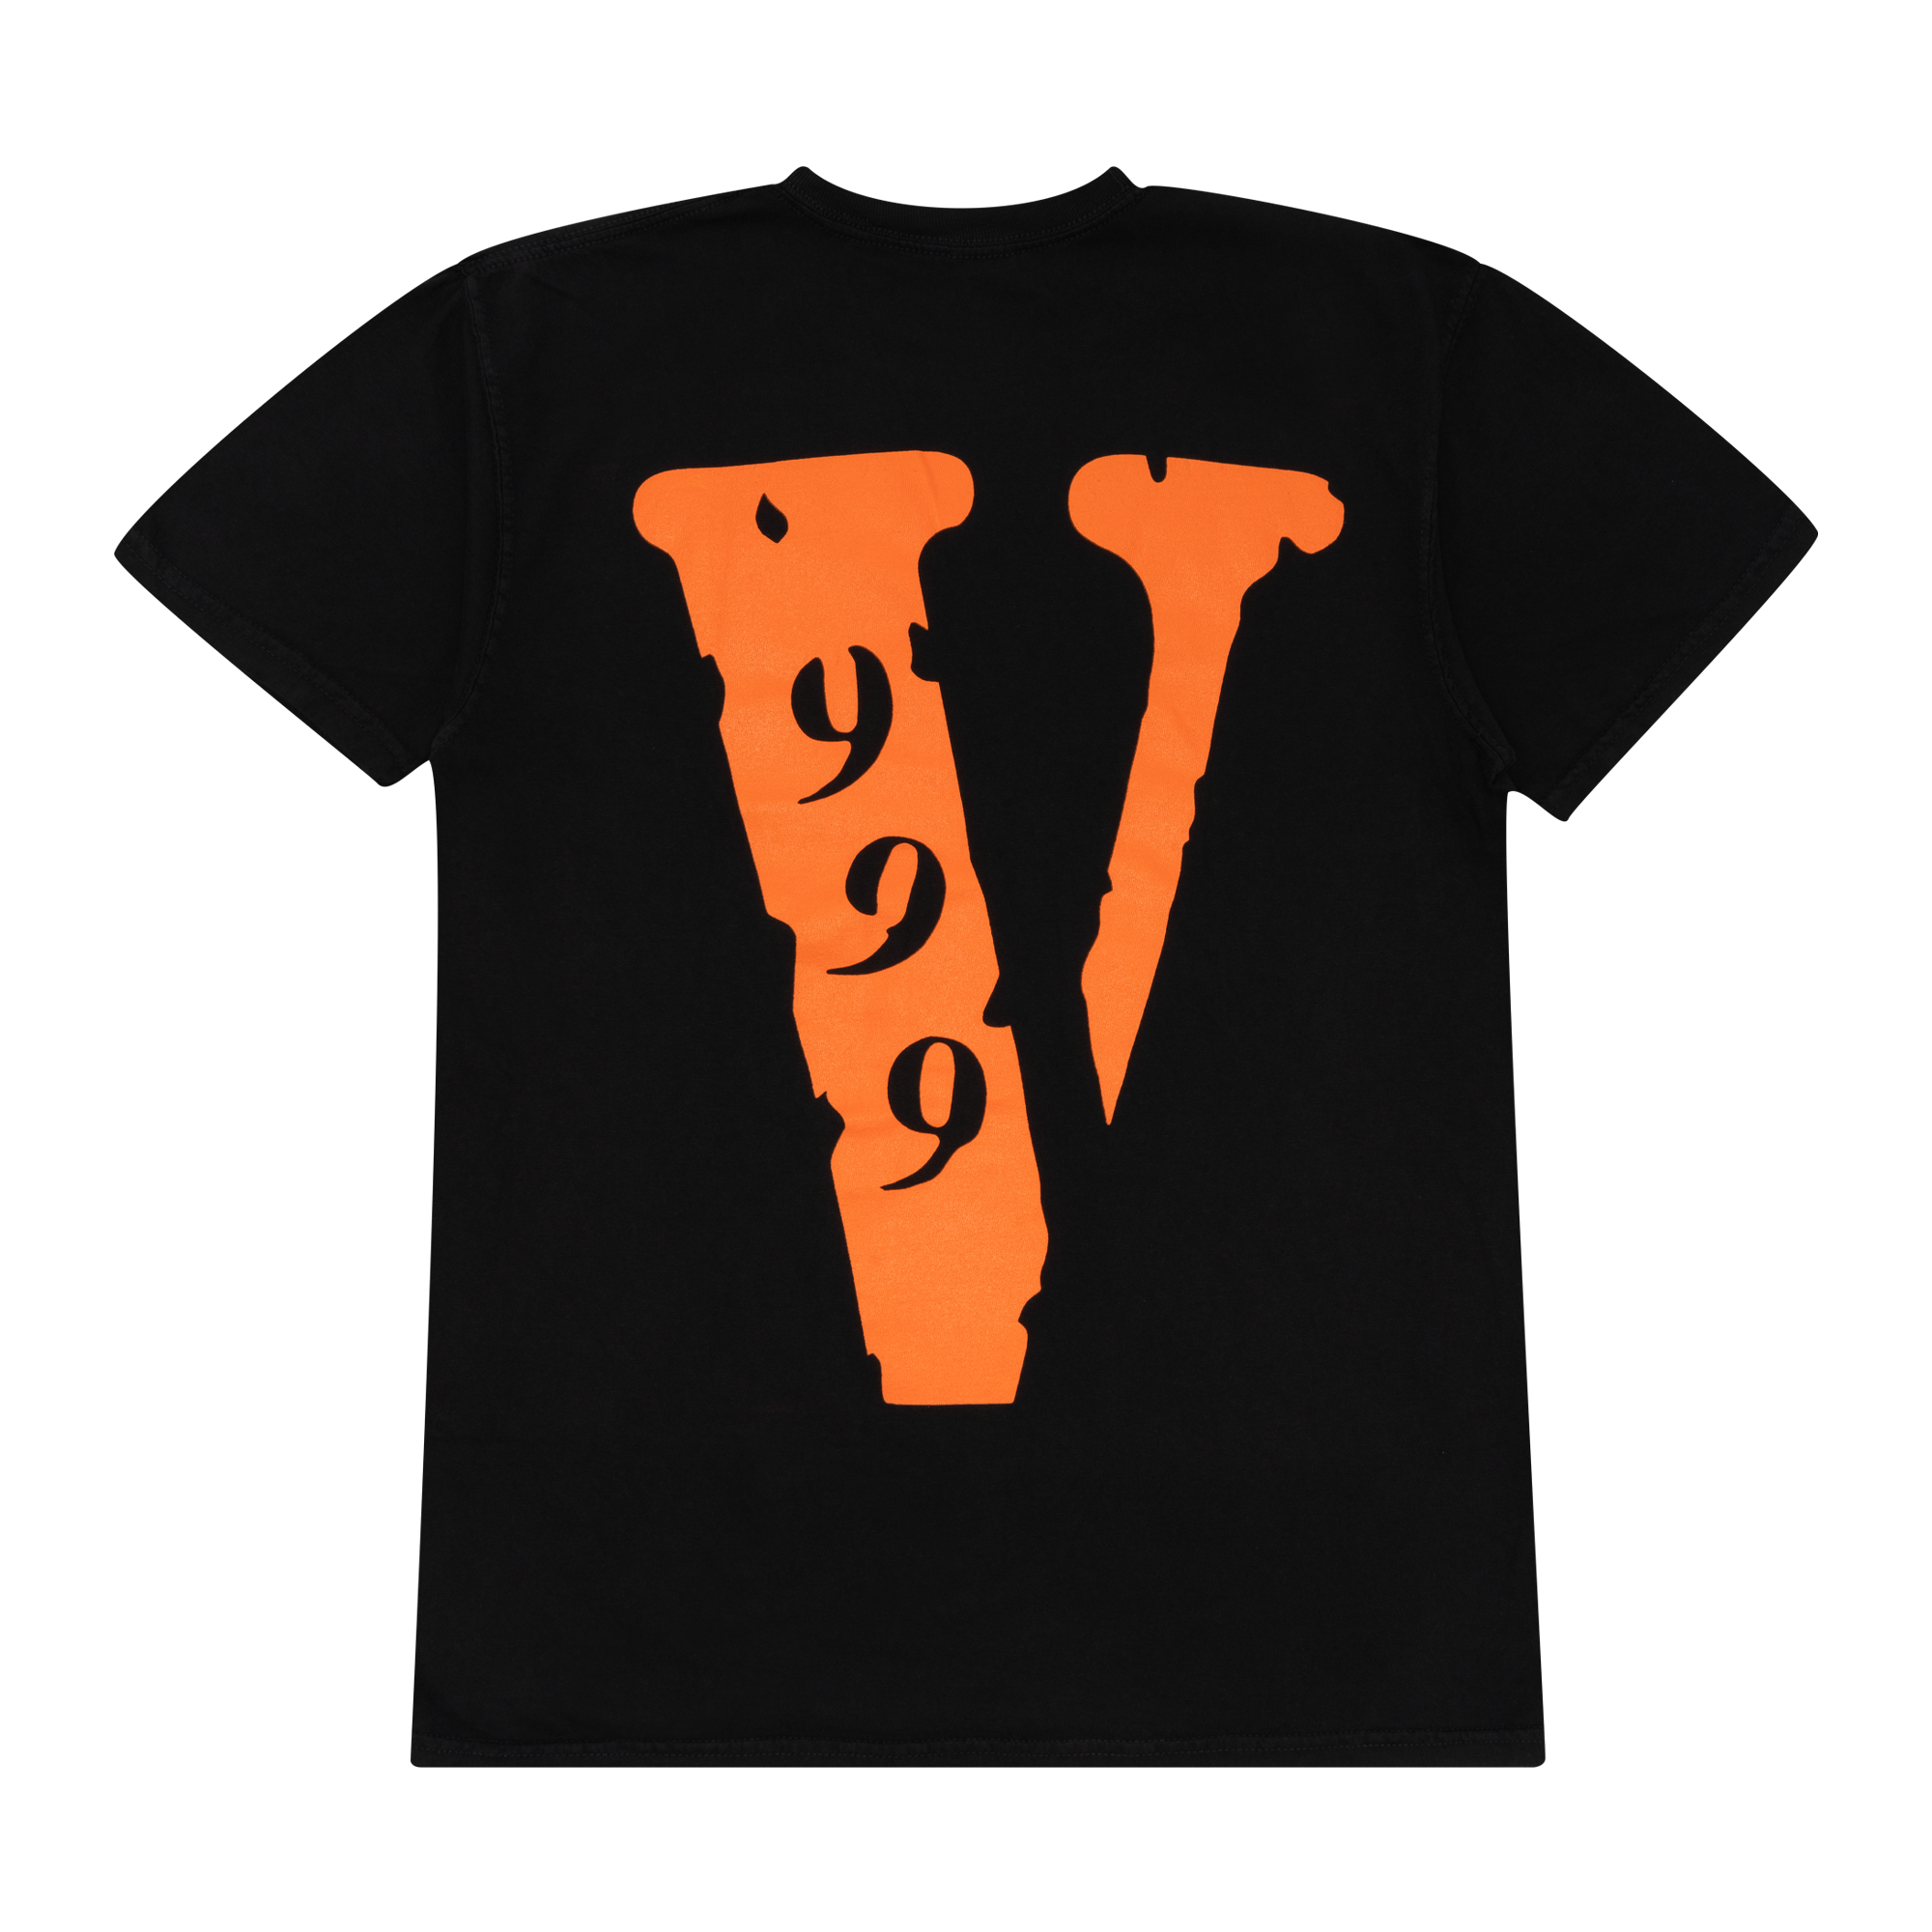 Juice Wrld x Vlone 999 T-Shirt Black-PLUS